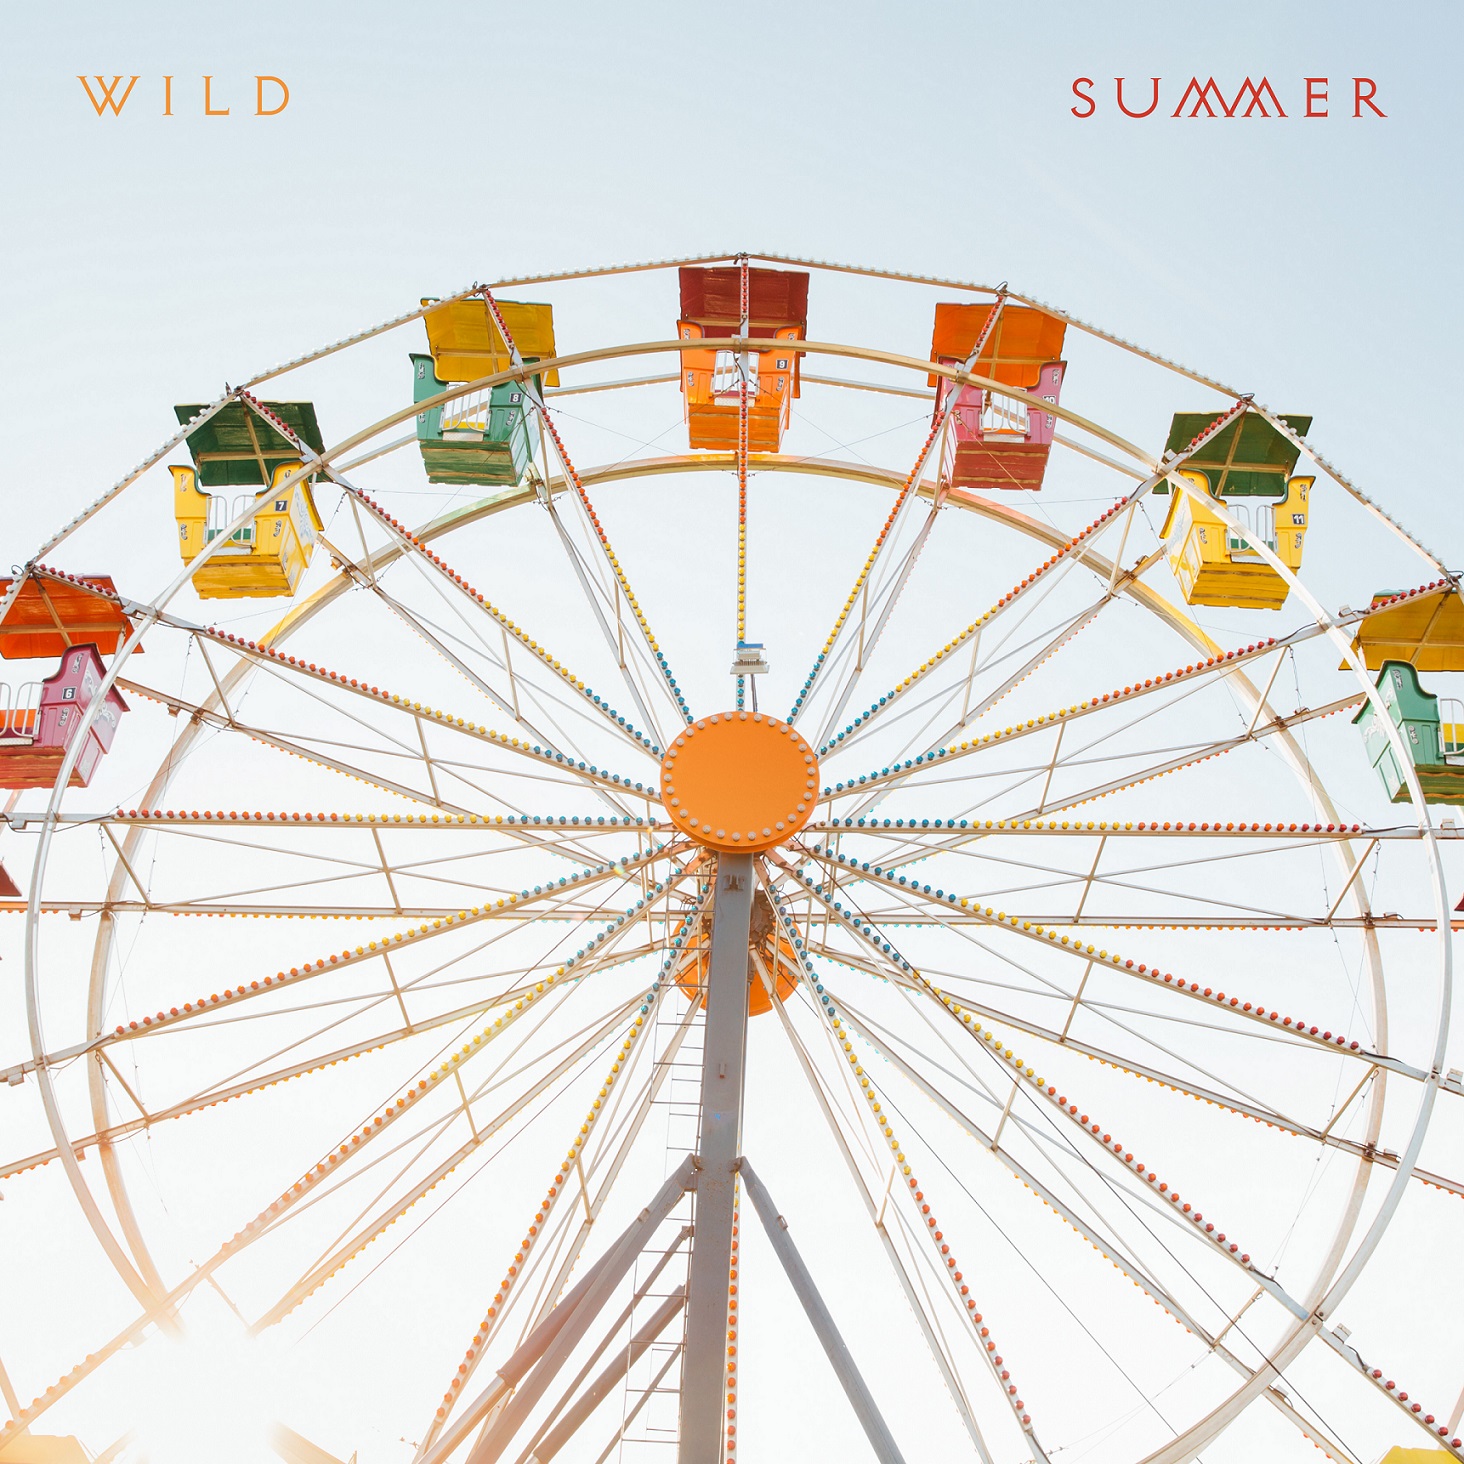 Summer - Wild